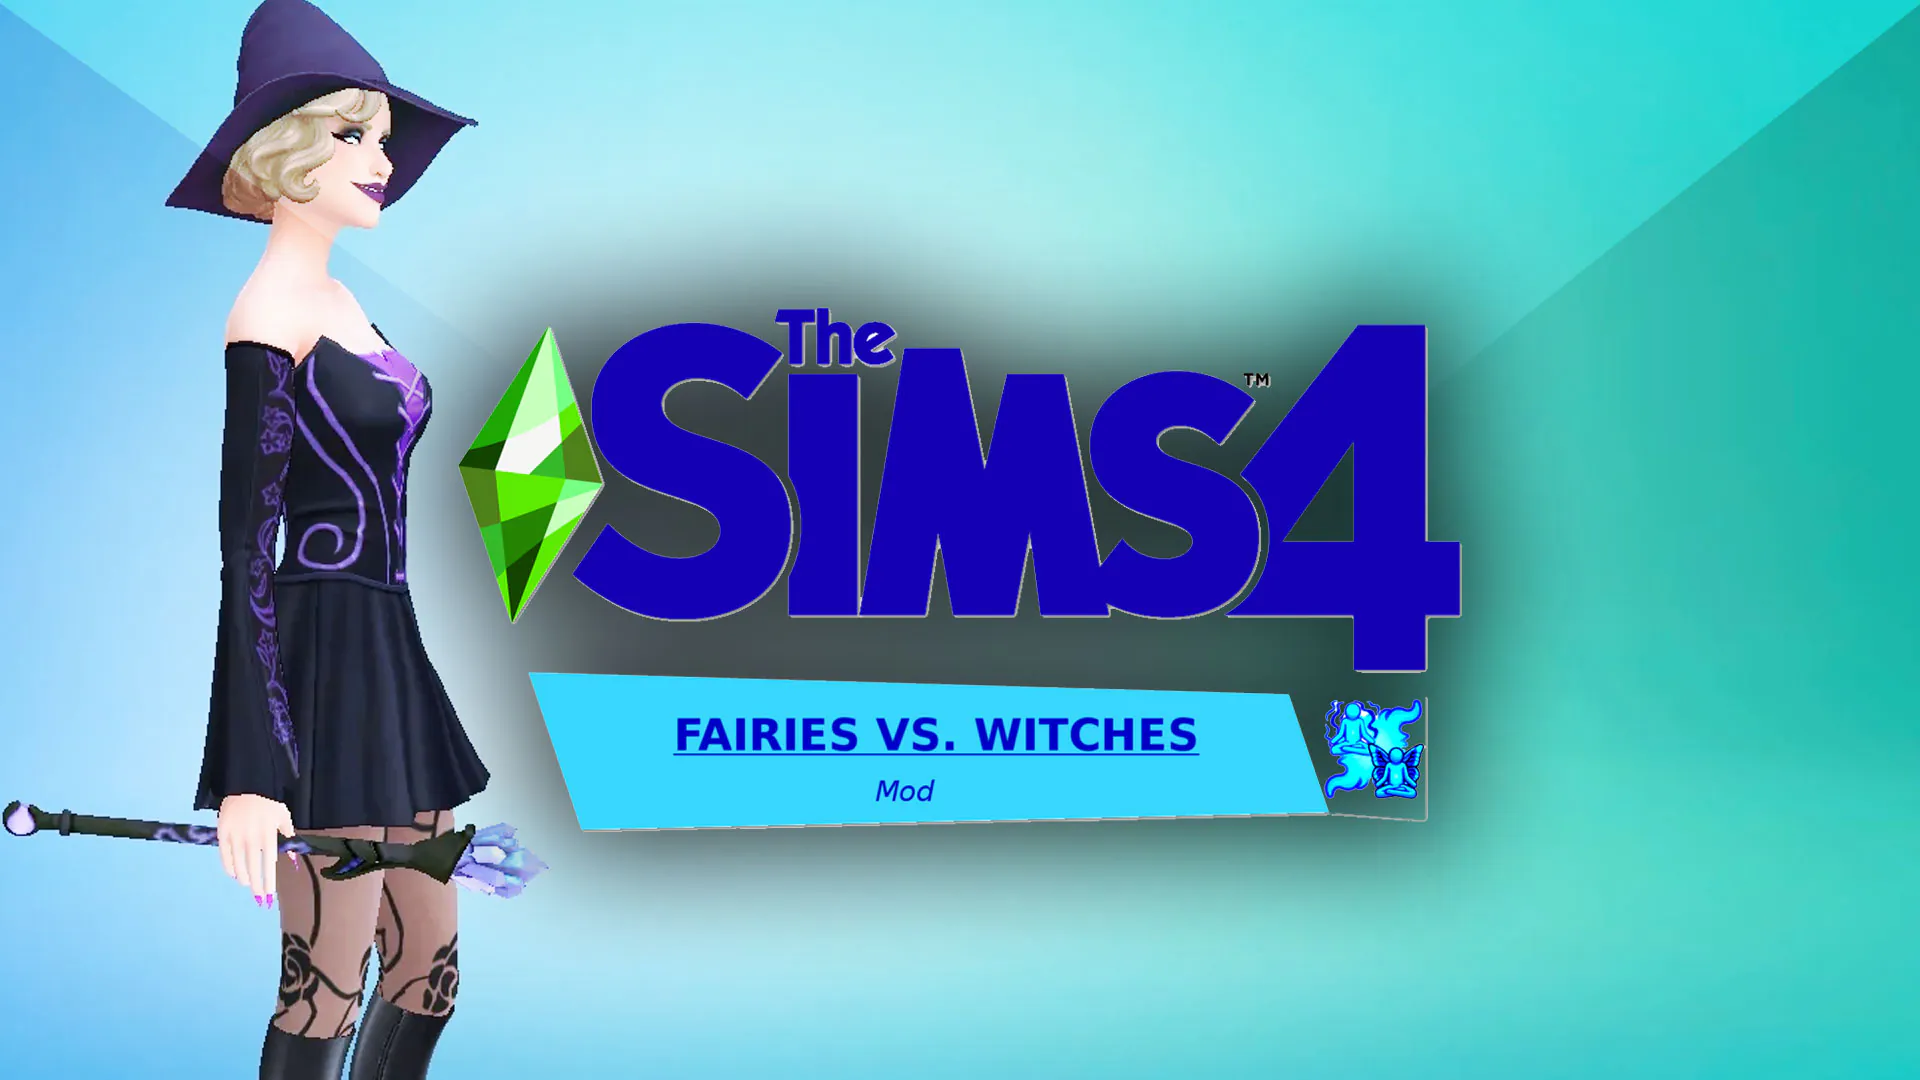 دانلود ماد Fairies vs. Witches برای بازی The Sims 4